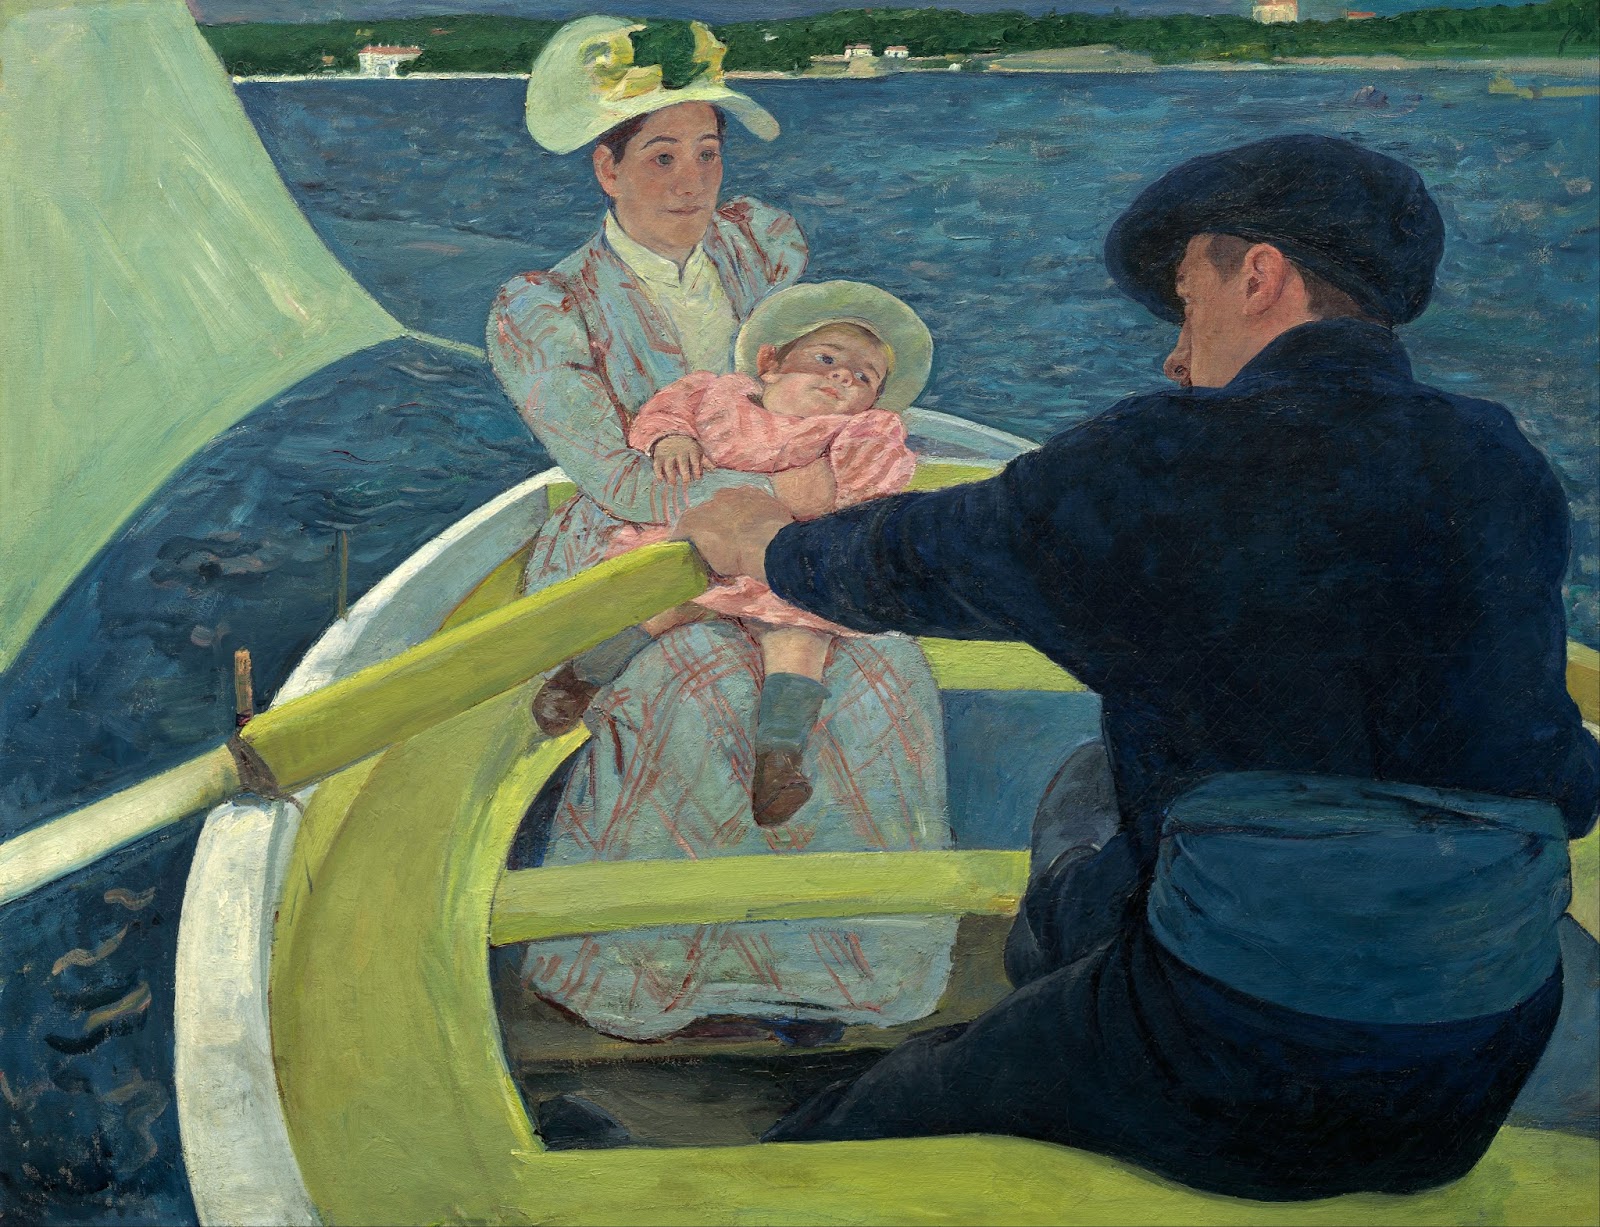 A festa de barco by Mary Cassatt - 1893–1894 